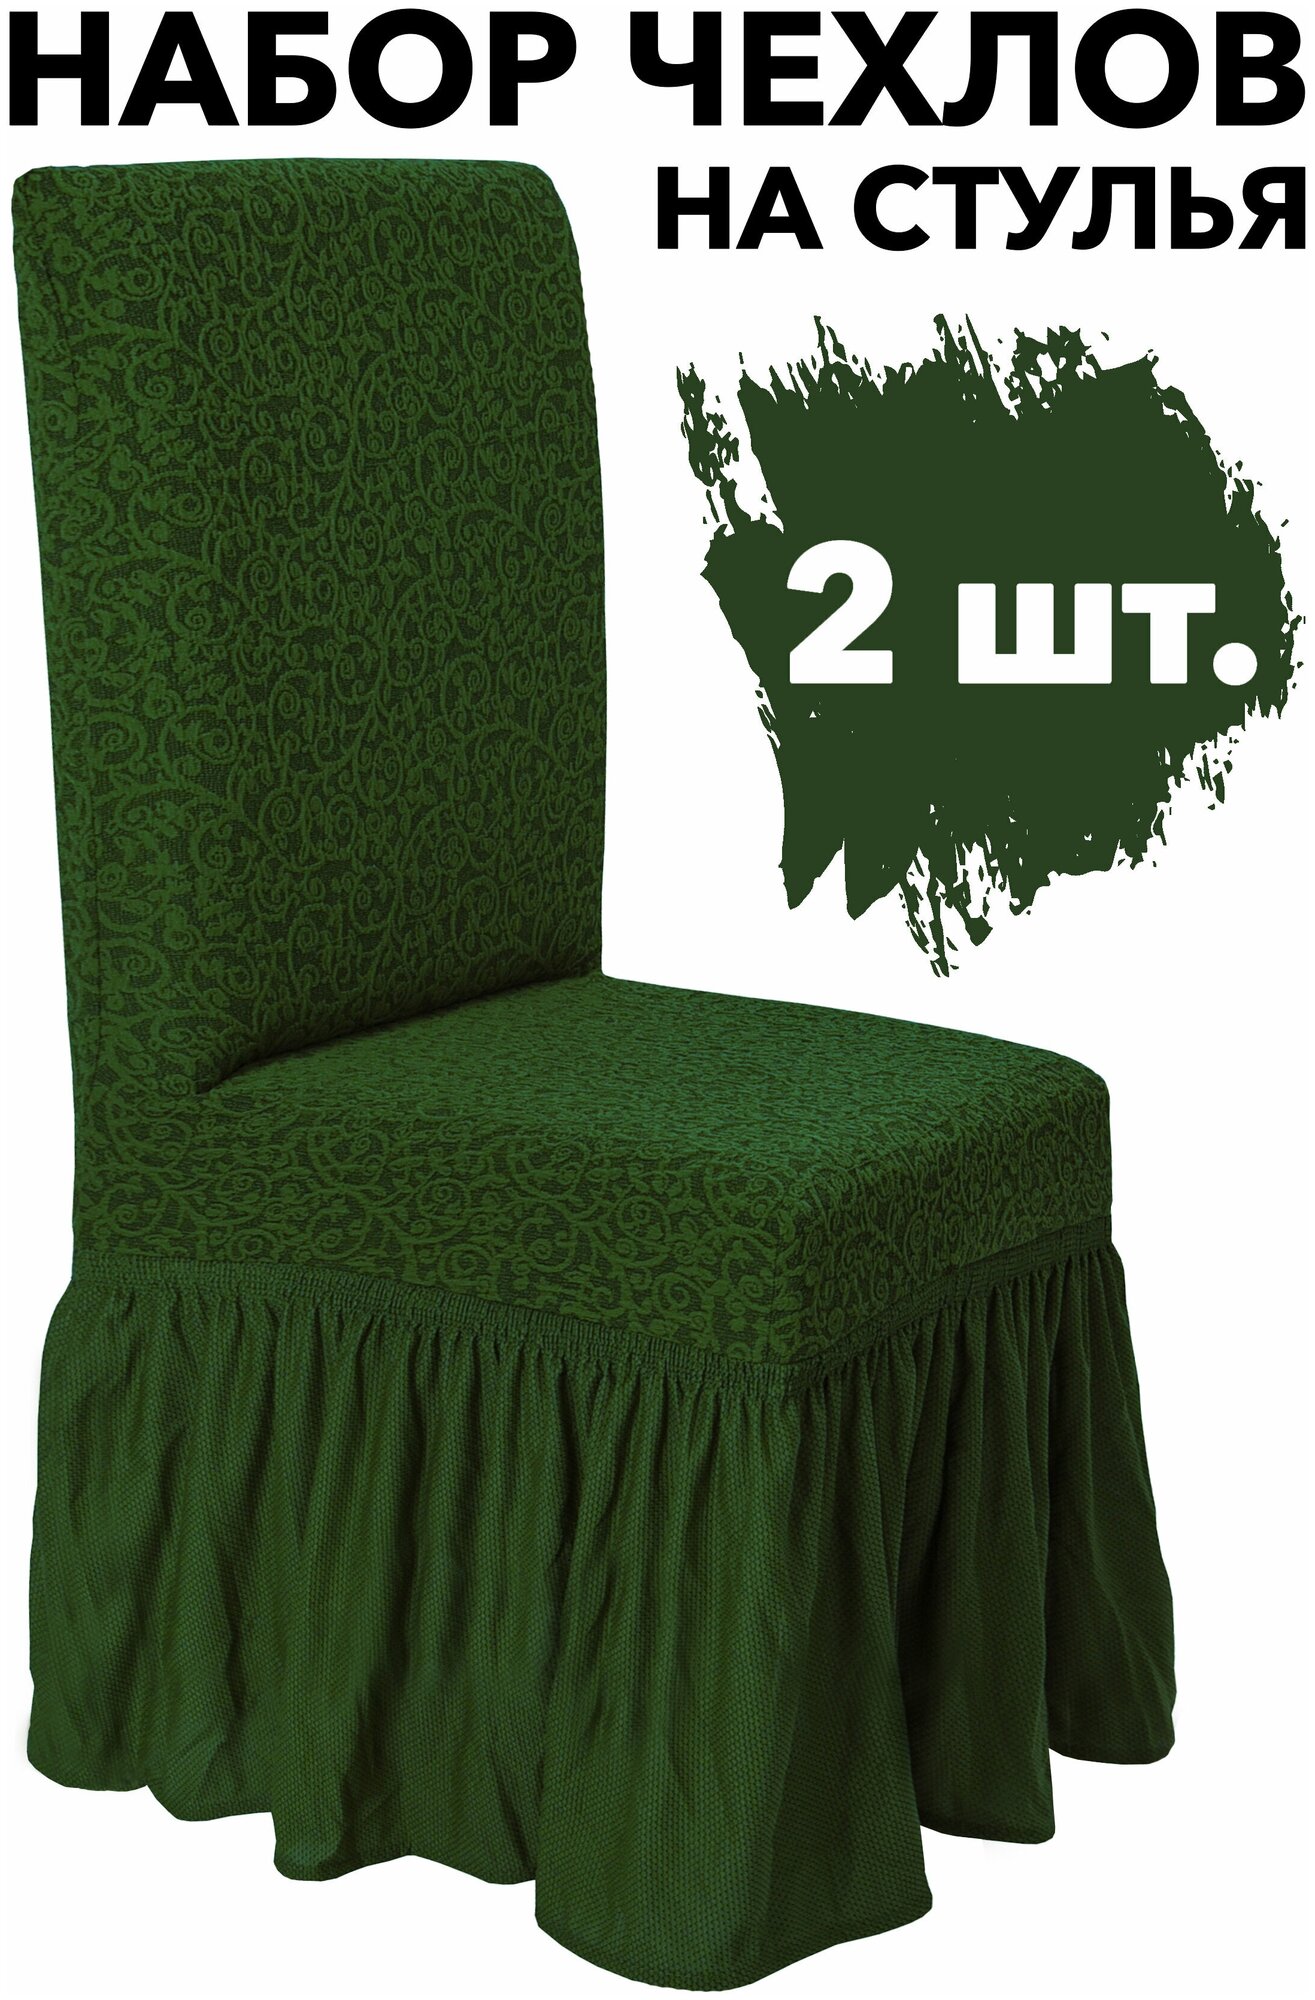 Чехол на стул со спинкой набор 2 шт на резинке универсальный Venera, цвет Зеленый